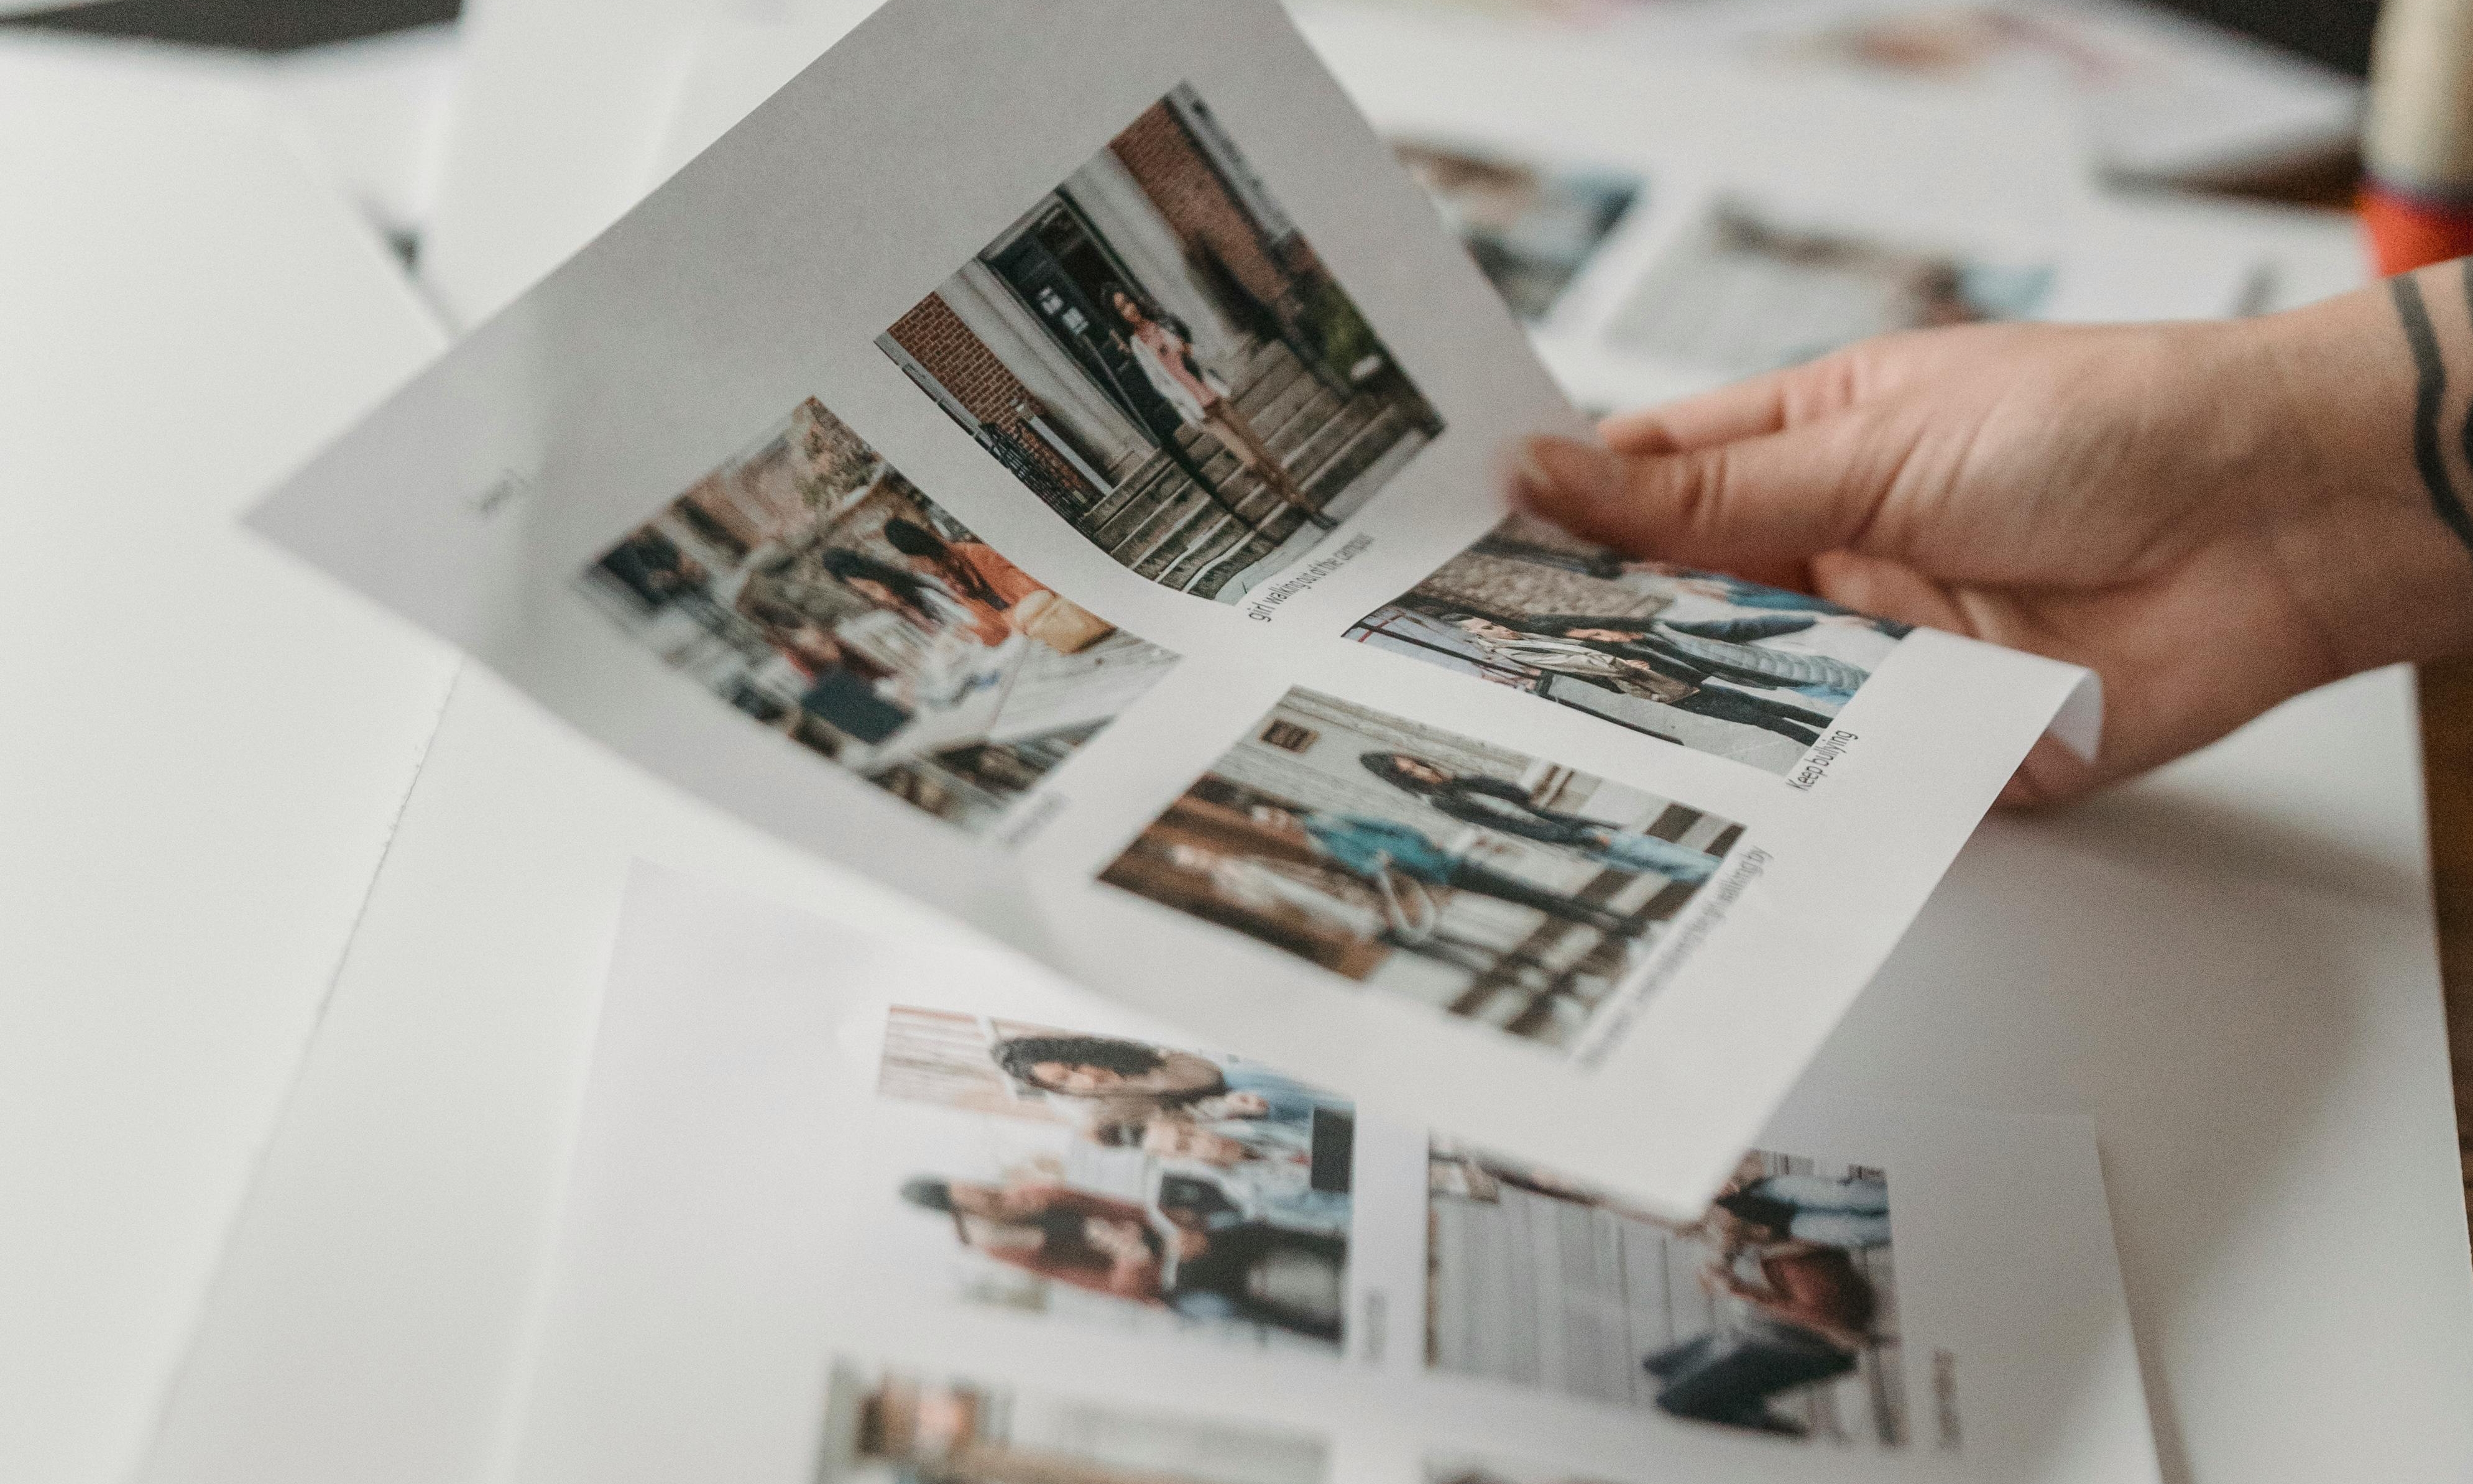 Una mano sujetando una página de fotos impresas | Fuente: Pexels